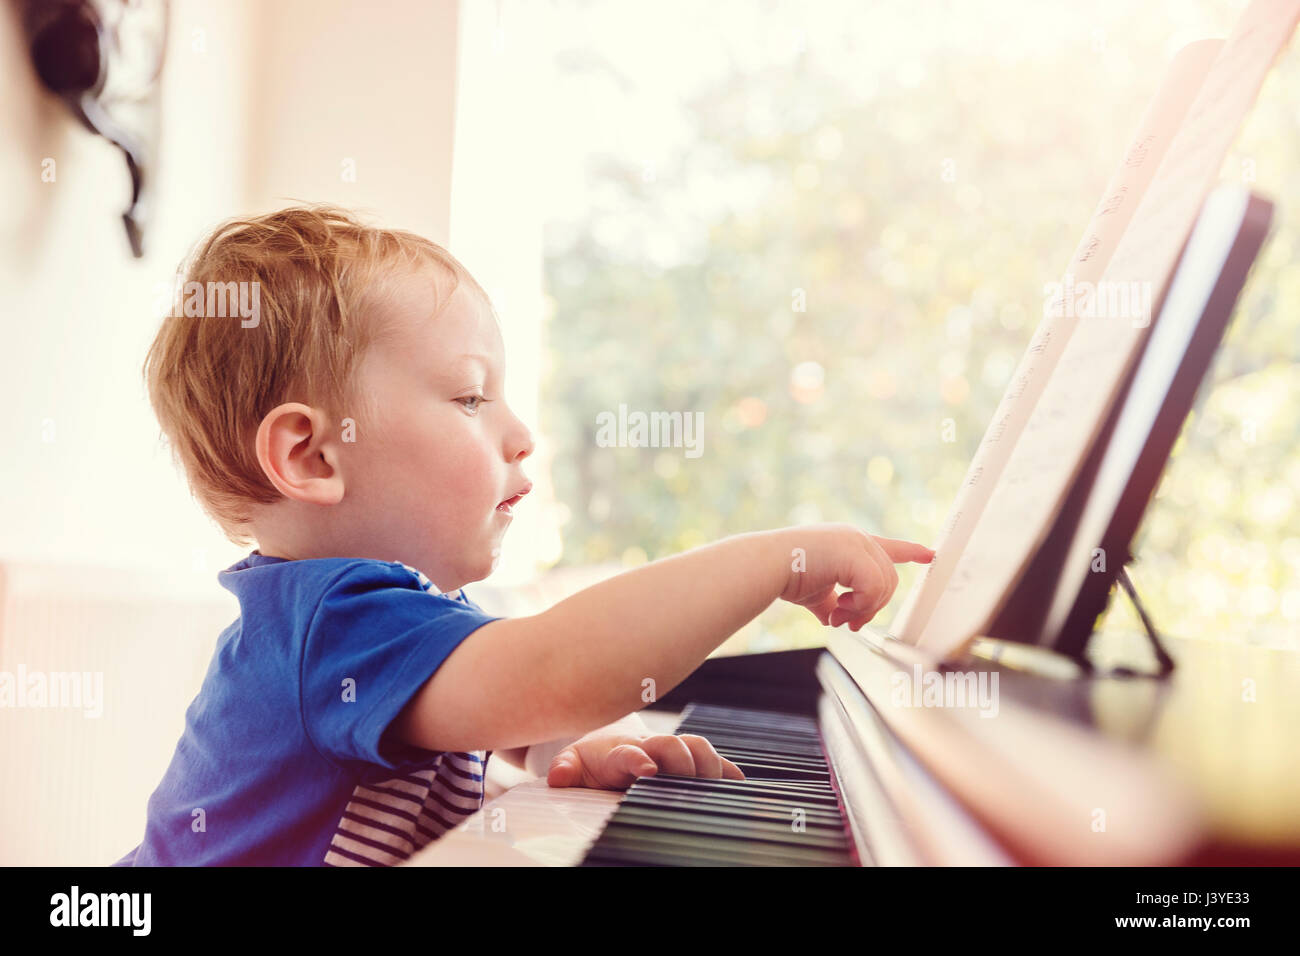 Junge Kleinkind zeigt auf musikalische Kerbe am Klavier Stockfoto